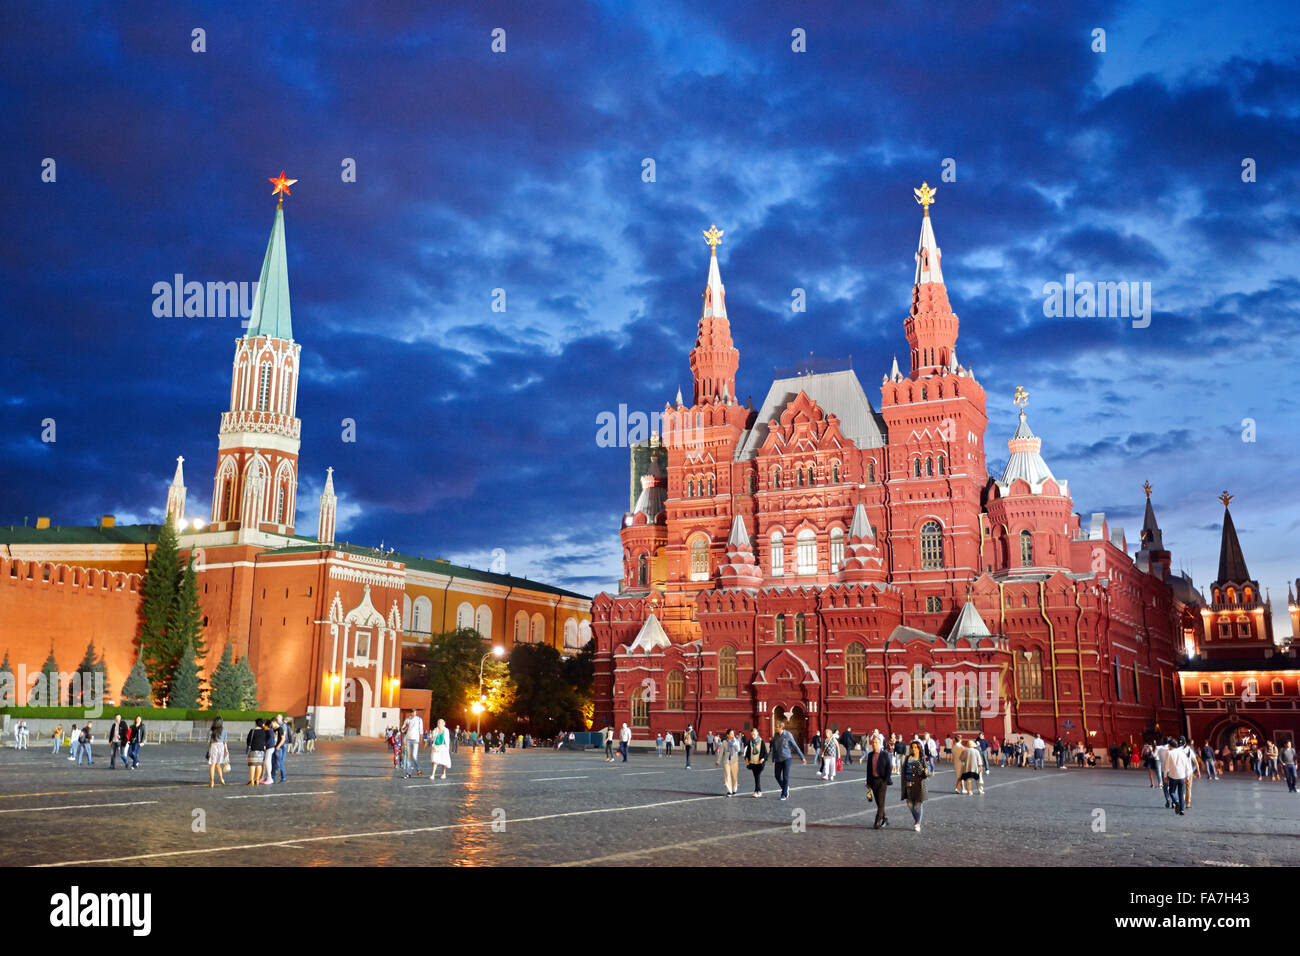 Personnes marchant sur la place Rouge devant le Musée historique de l'État au crépuscule. Moscou, Russie. Banque D'Images